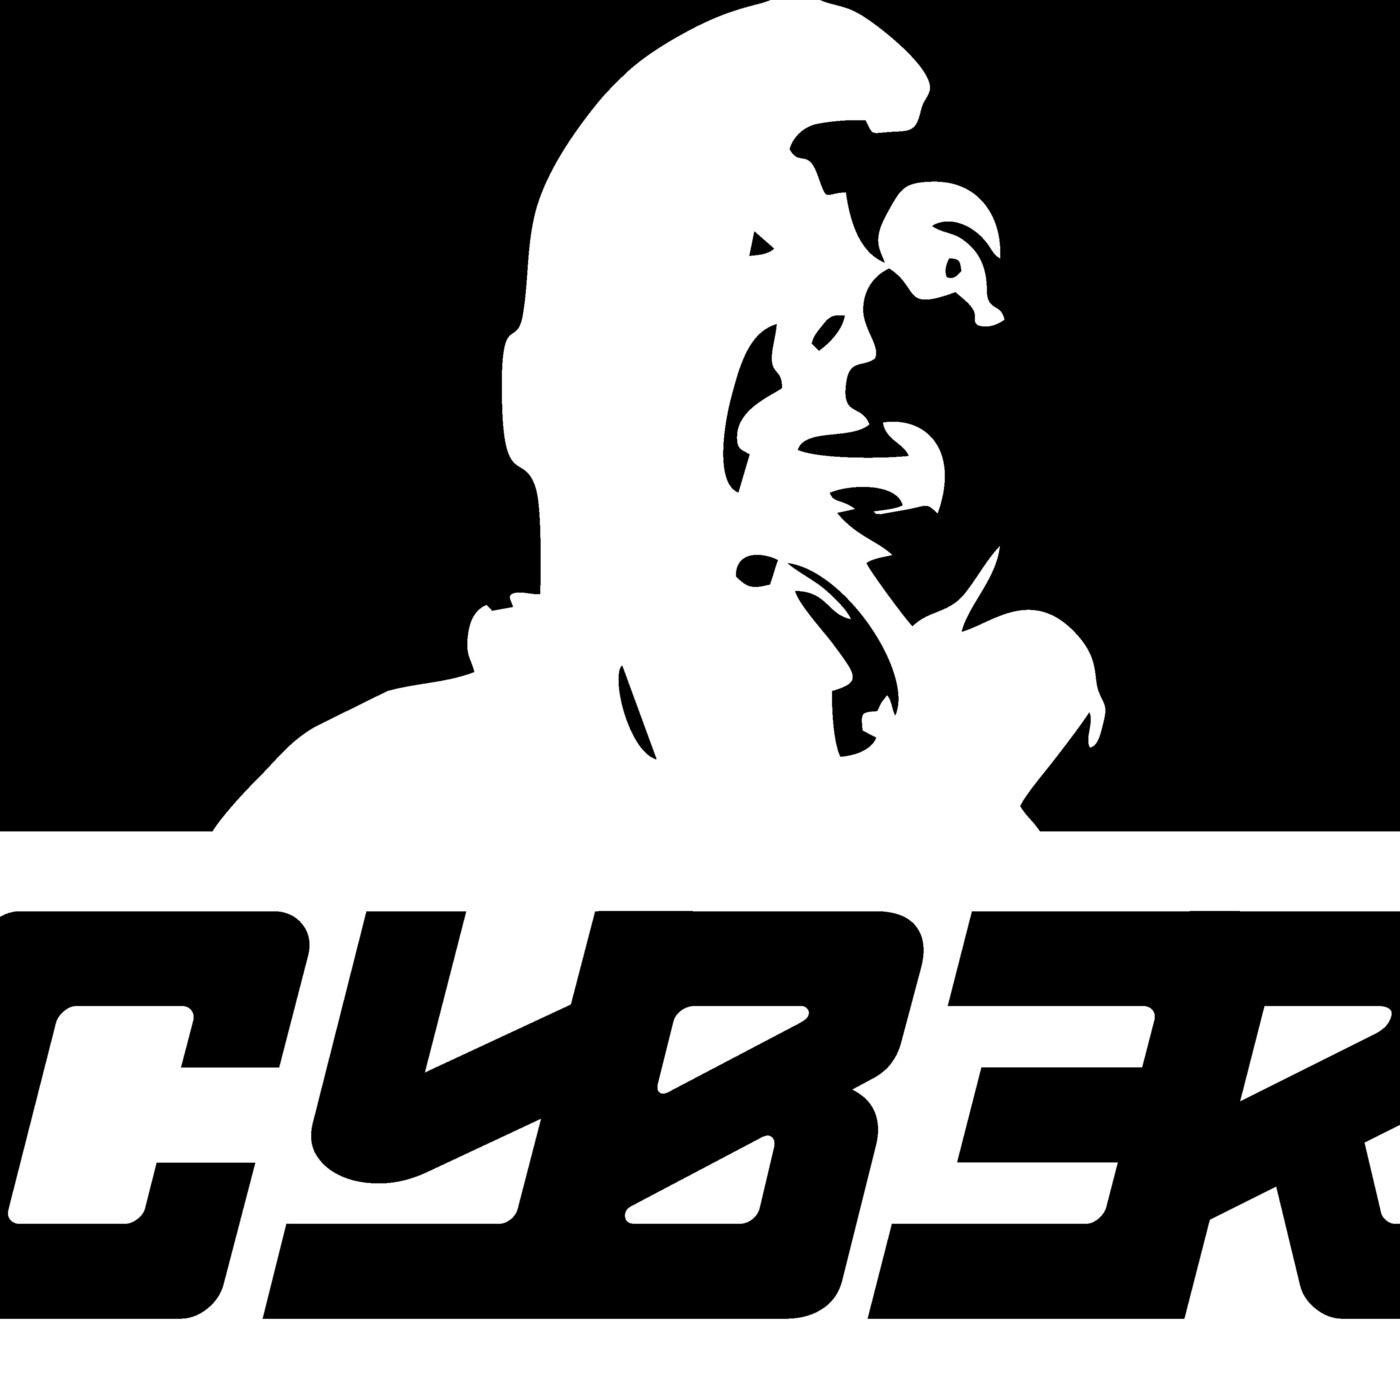 CyberBeats - Podcast Oficial de Francisco Fermin (Dj Cyber) @djcyber_oficial